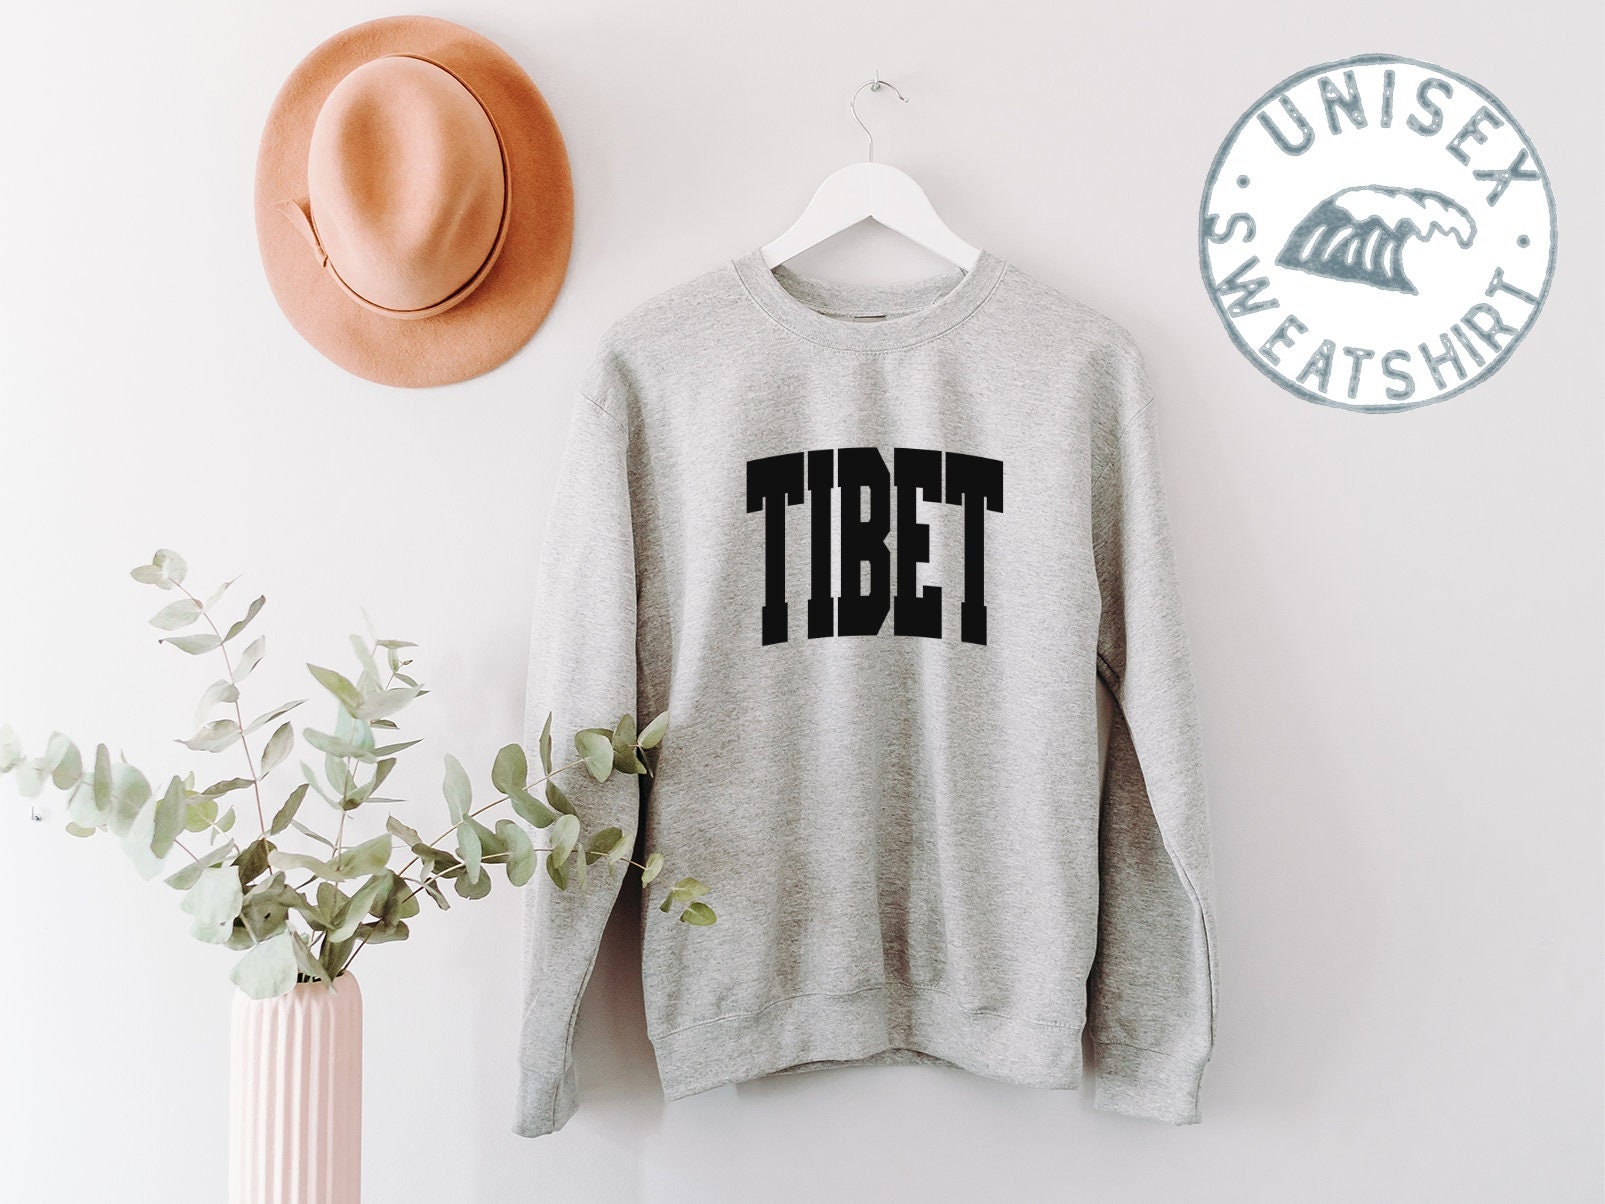 Tibet Umzug Sweatshirt, Lustige Pullover Shirt, Geburtstagsgeschenke Für Männer Und Frauen von 22ndOfOctober